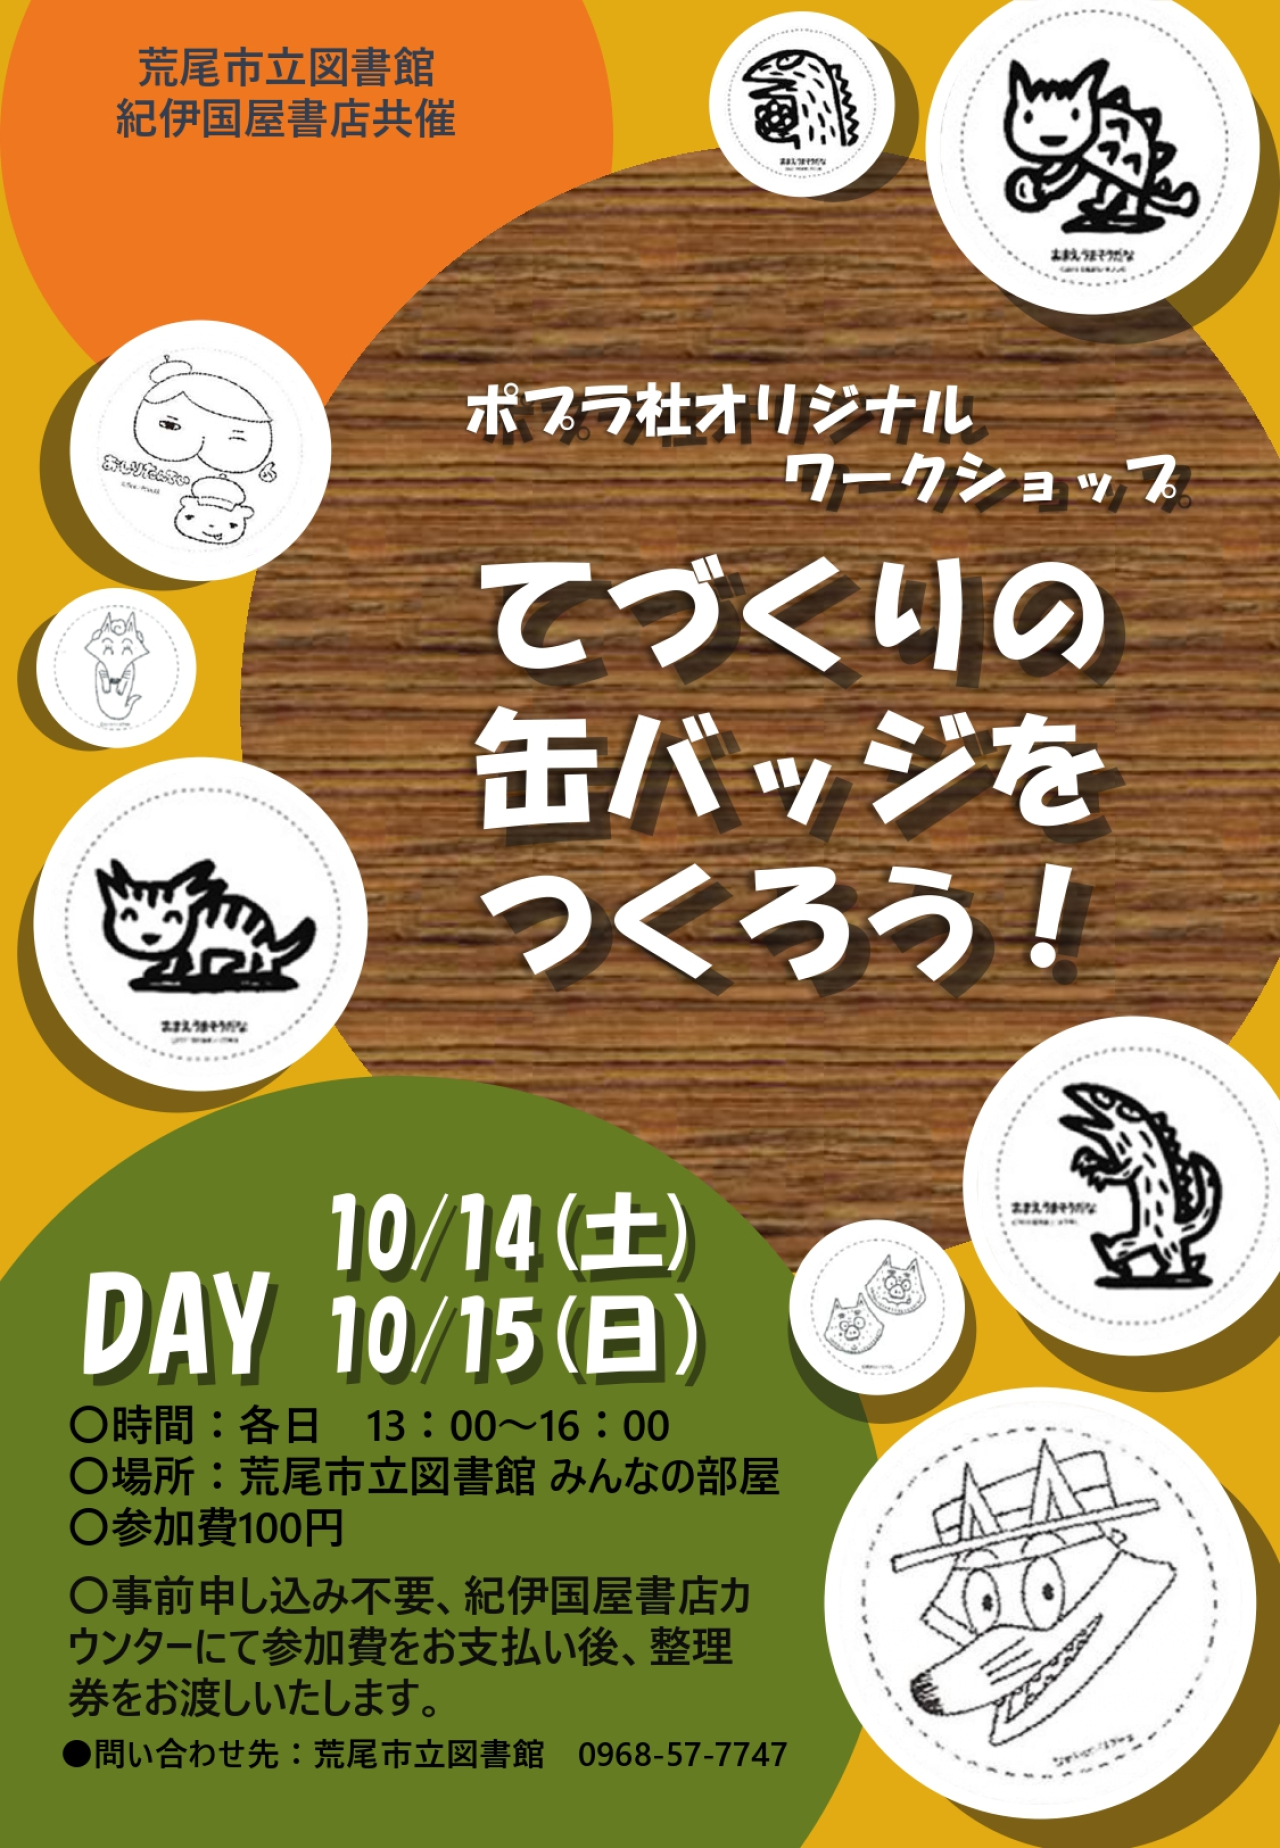 １０月１４日（土）１５日（日）に手作り缶バッジのイベントが開催されます！